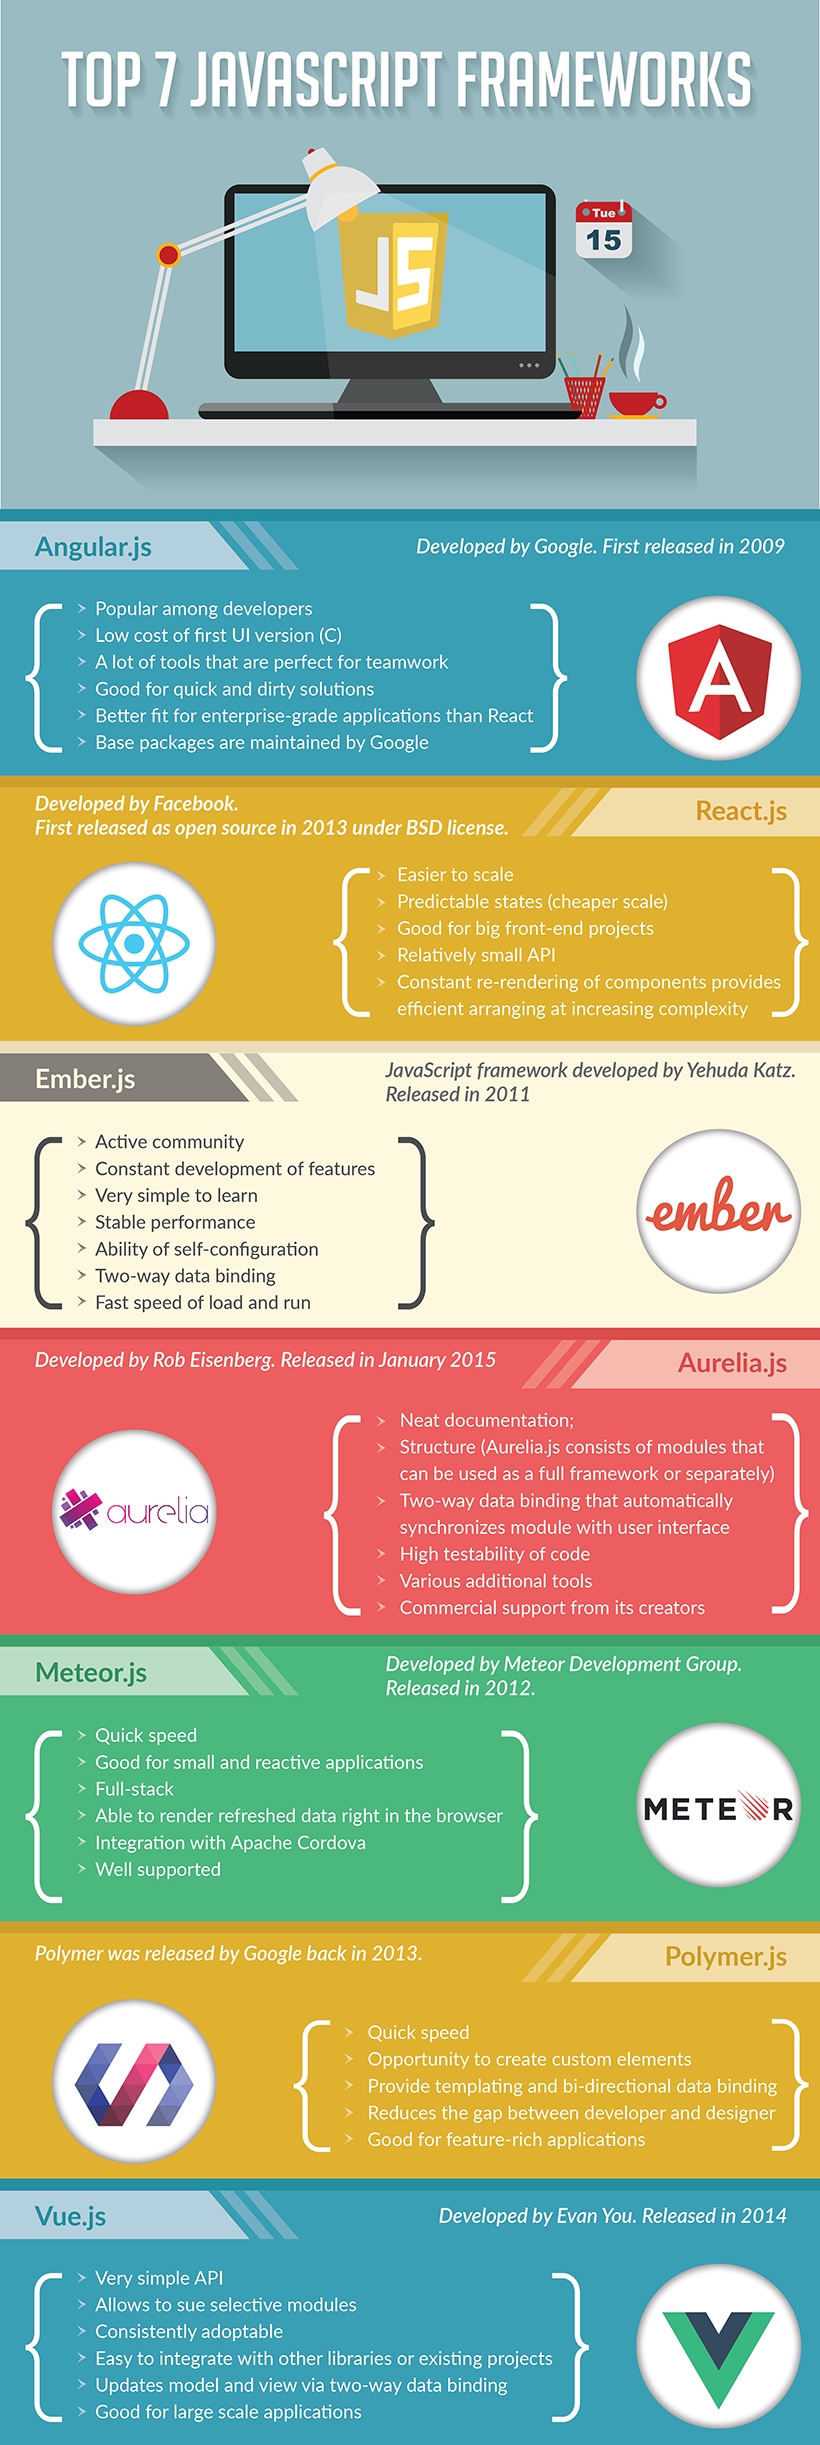 Image shows side-by-side comparison of seven JavaScript Frameworks: Angular.js, React .js, Ember.js, Aurelia.js, Meteor.js, Polymer.js, Vue.js